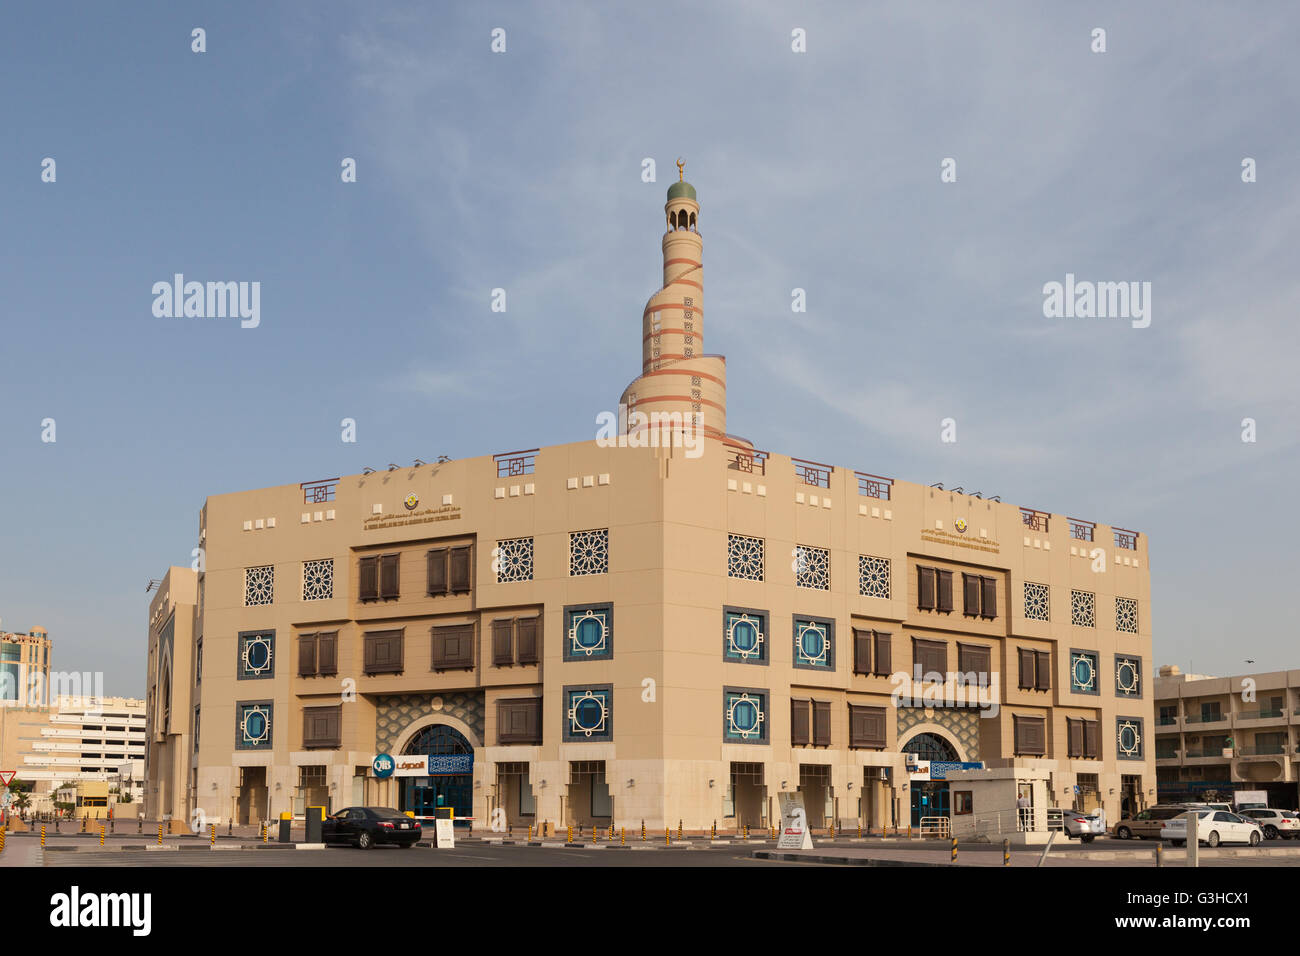 Al Fanar centro culturale islamico. La moschea a spirale. Doha. Foto Stock